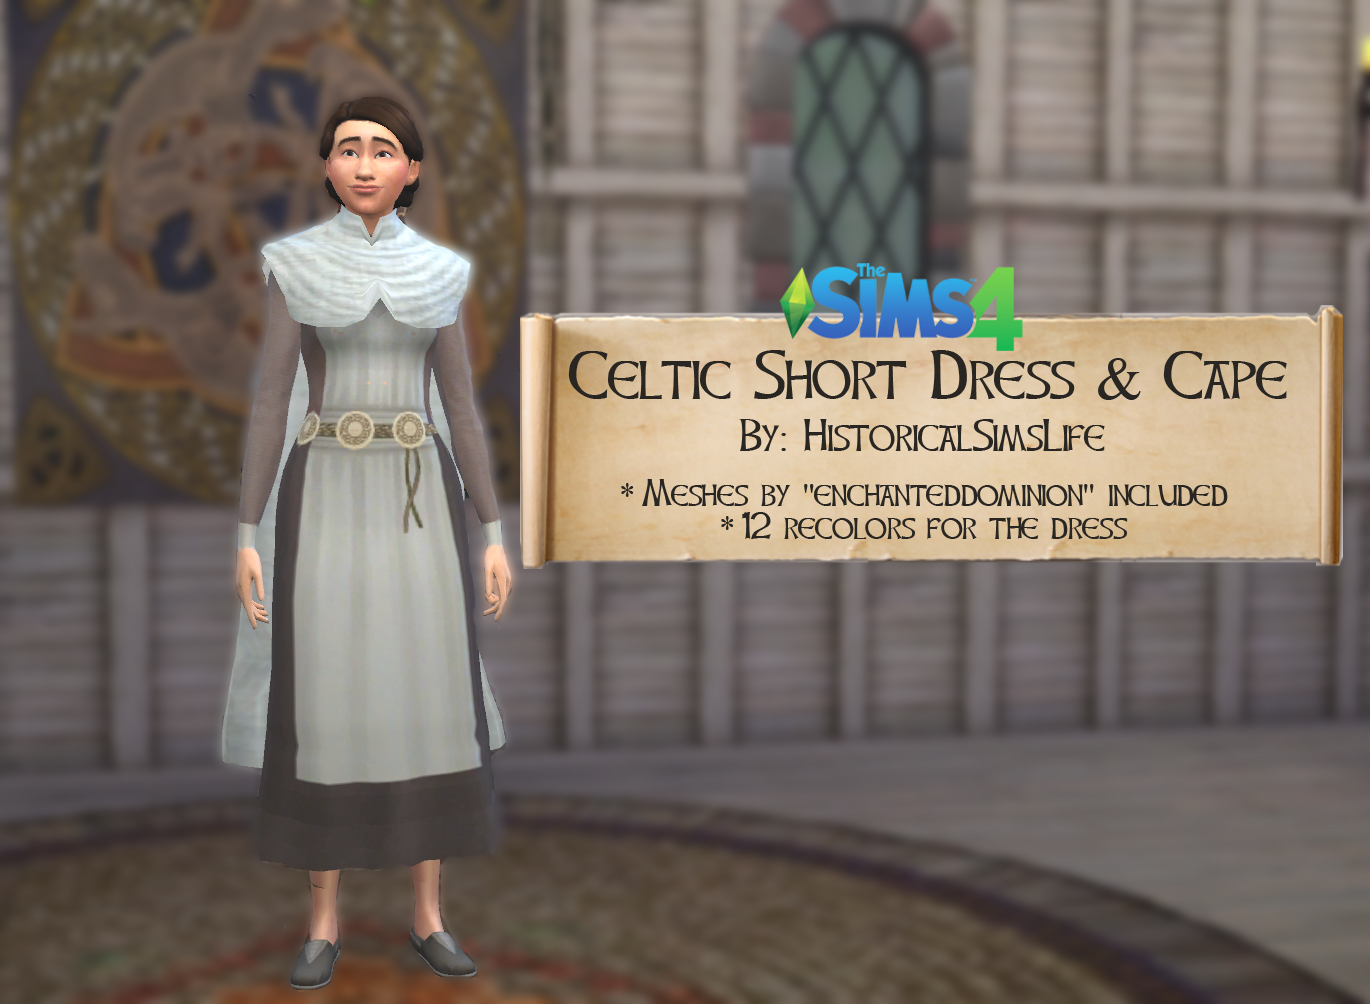 Sims 4: Одежда в стиле фэнтези, средневековья и тому подобное 921